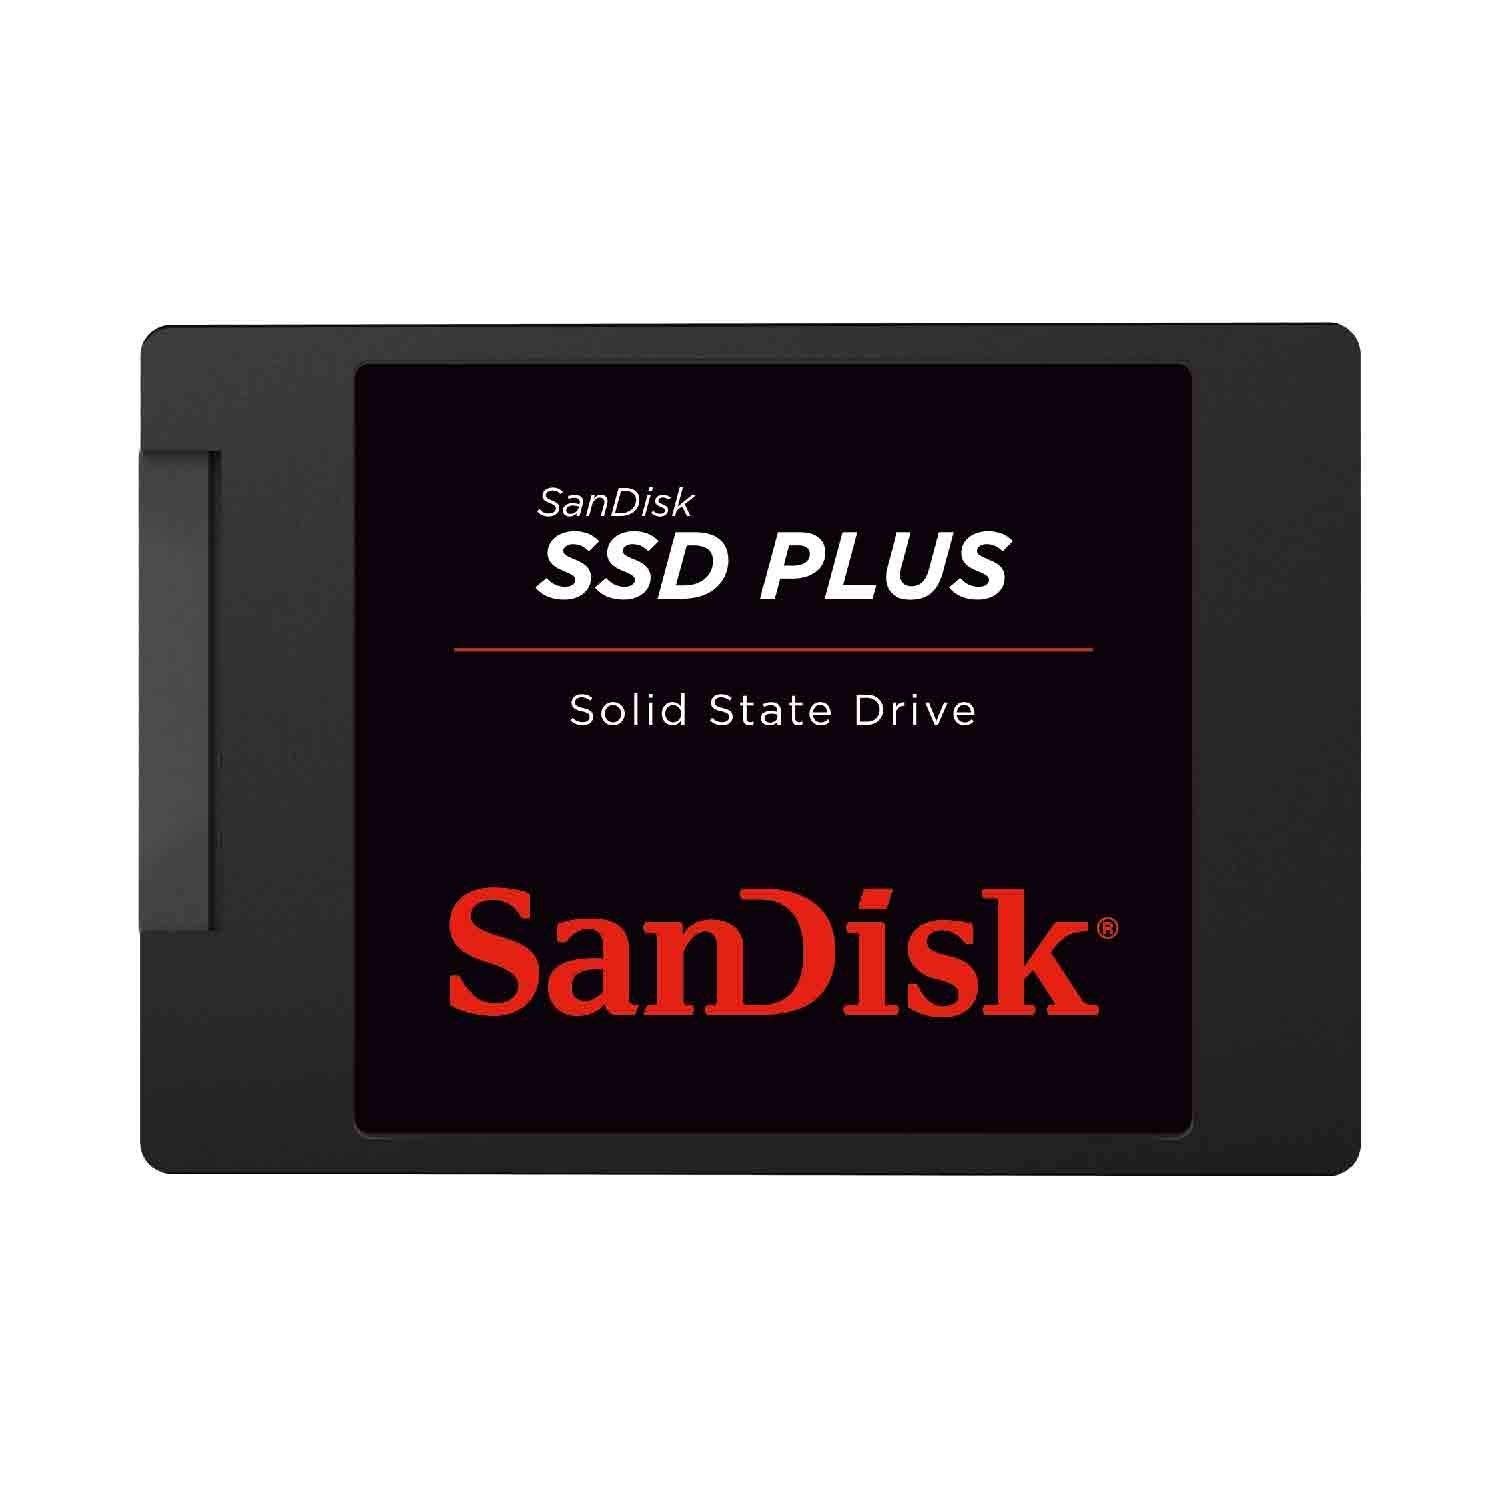 6 SSD - Best $700 PC Build 2019